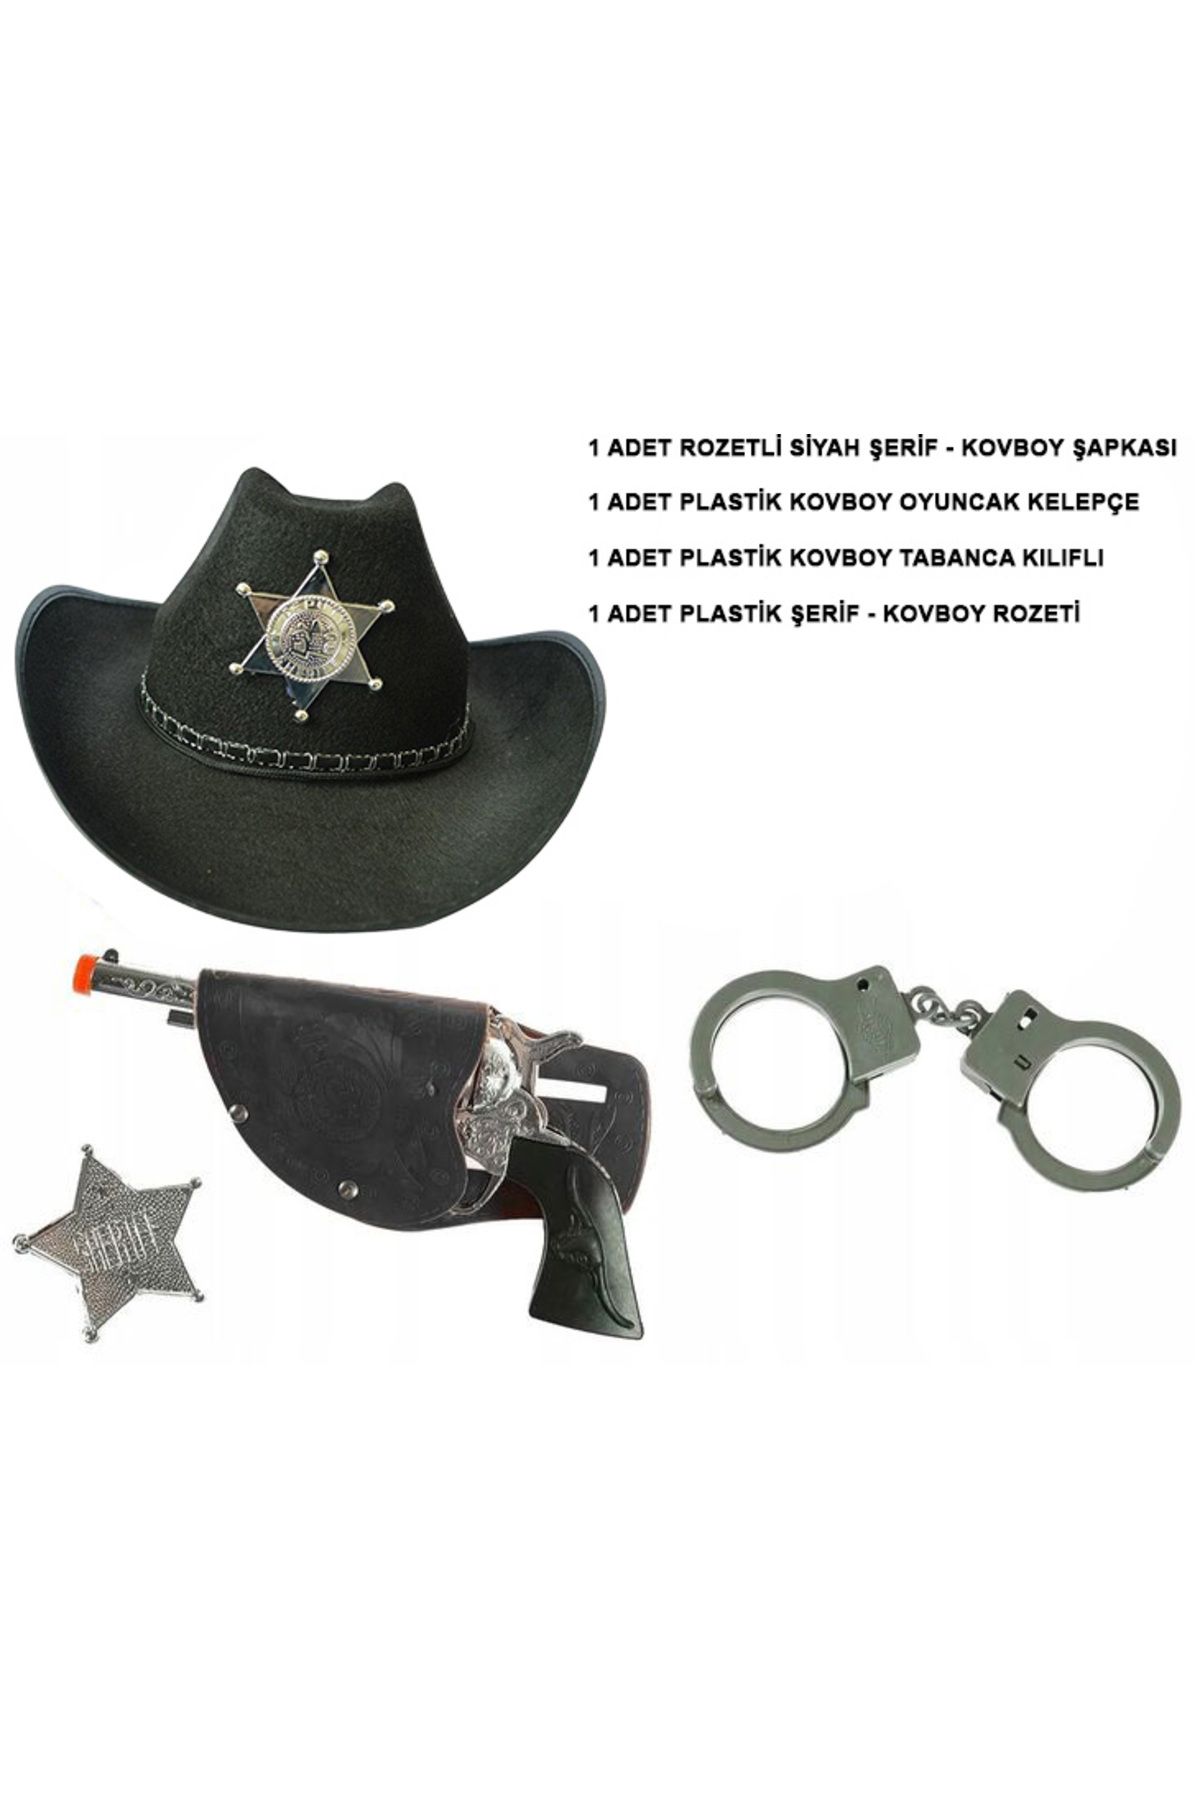 ihtiyaçavm Çocuk Boy Siyah Şerif-Kovboy Şapka Tabanca Rozet ve Kelepçe Seti 4 Parça